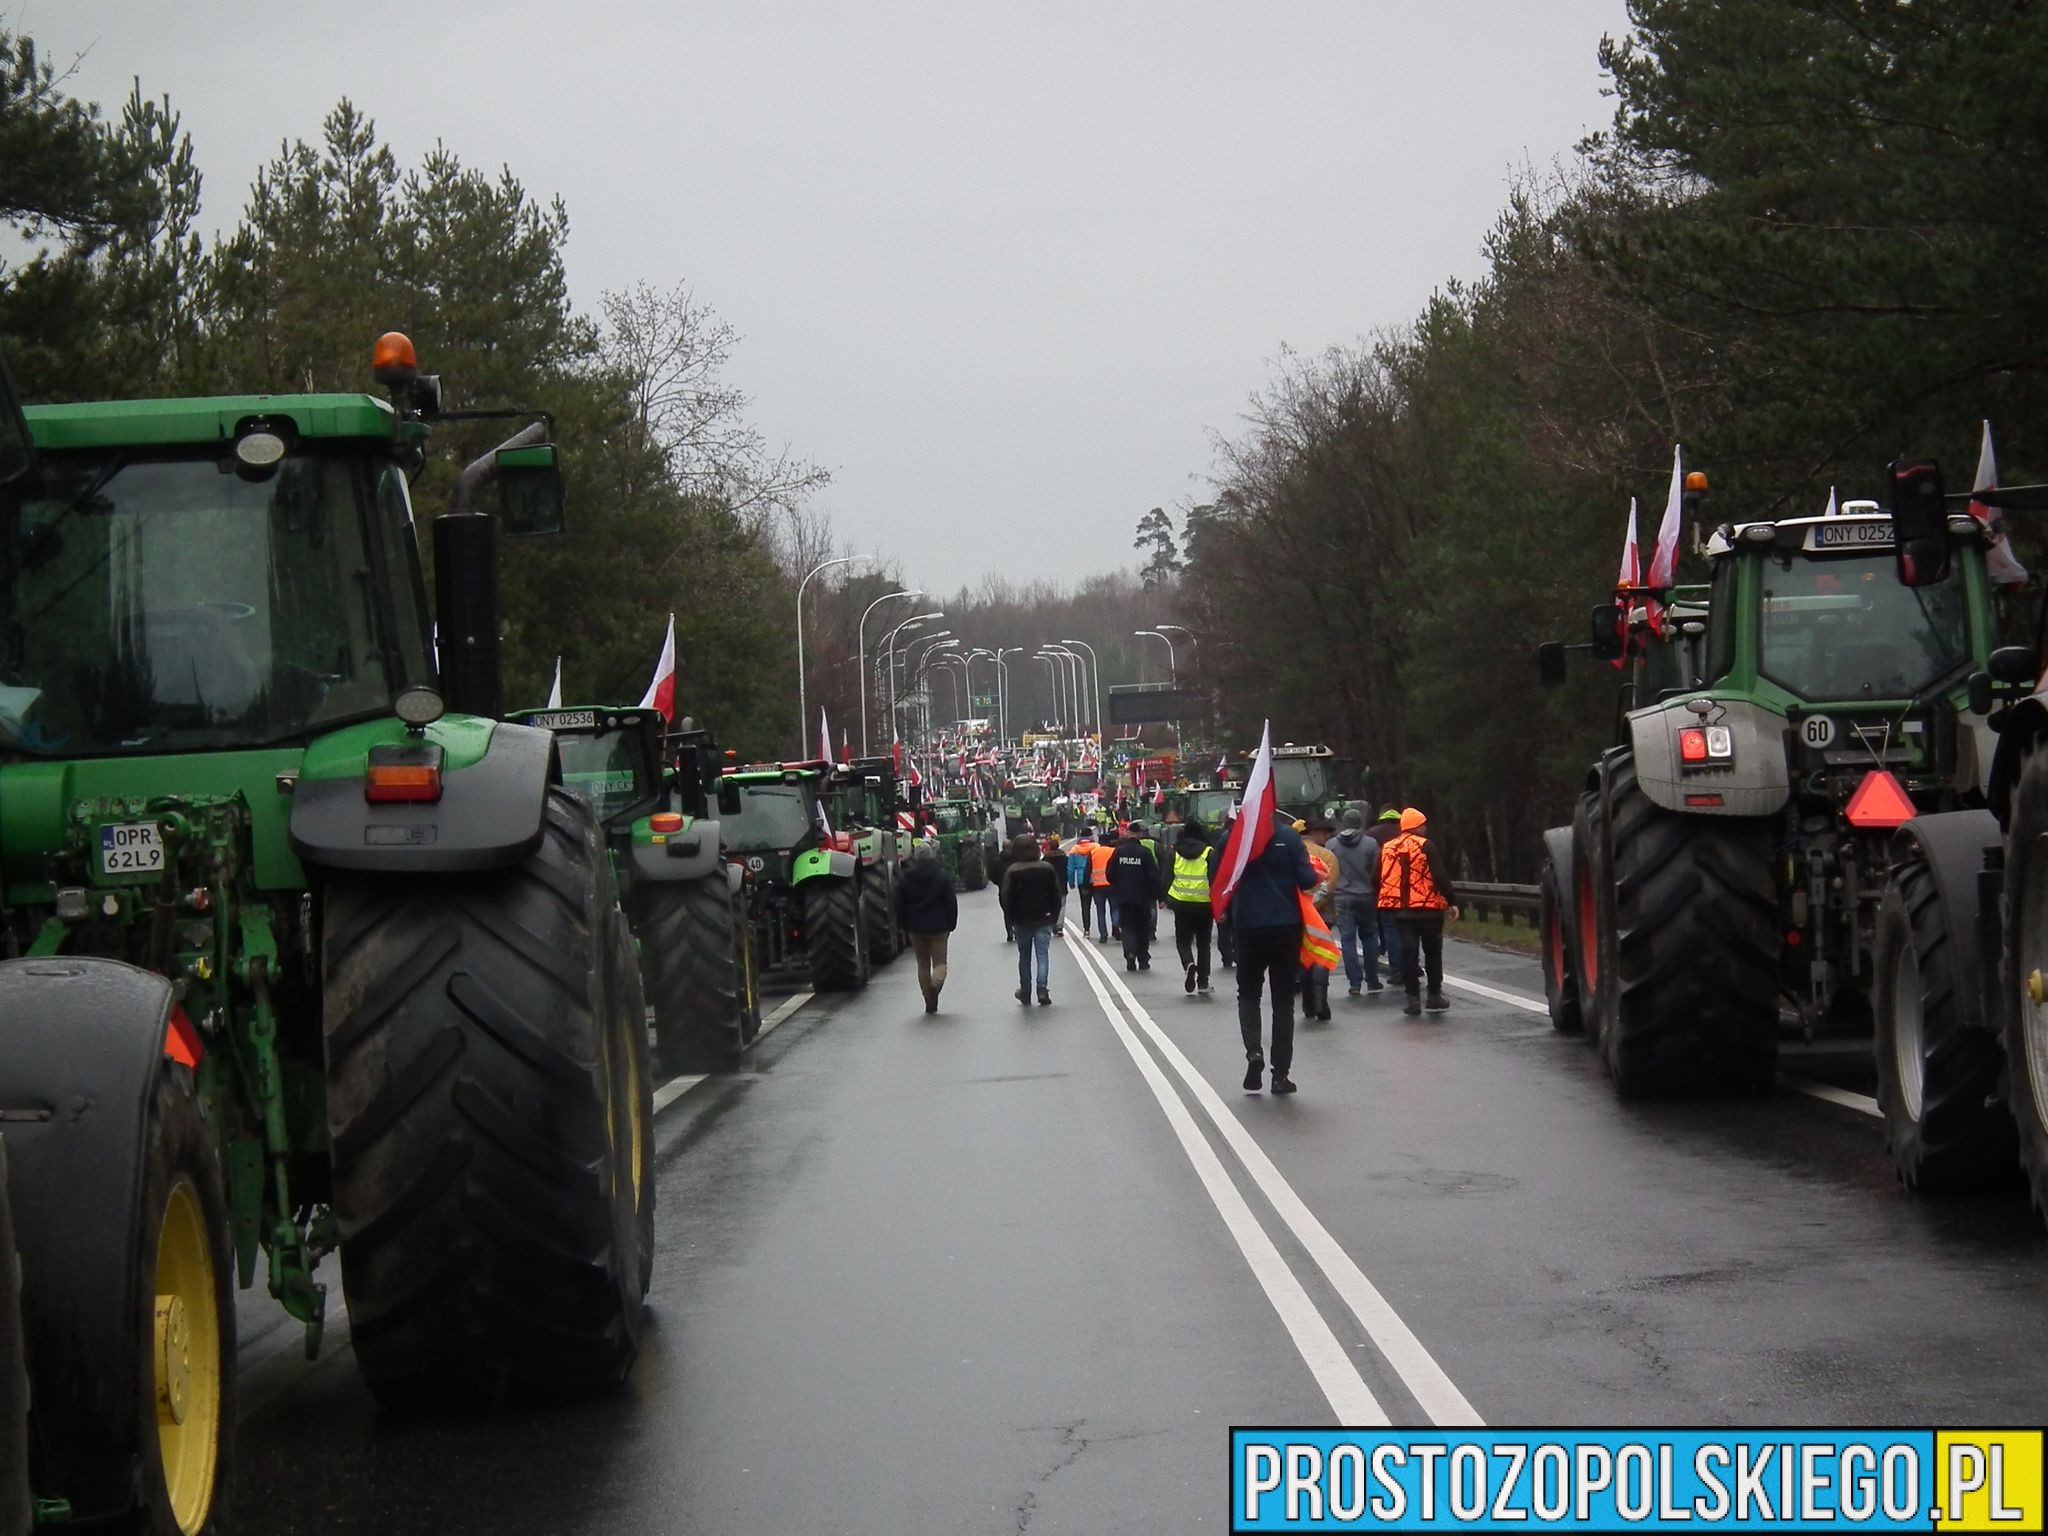 protest rolników, blokada na drogach, rolnicy protesatują, opolskie protest rolników, prostozopolskiego,